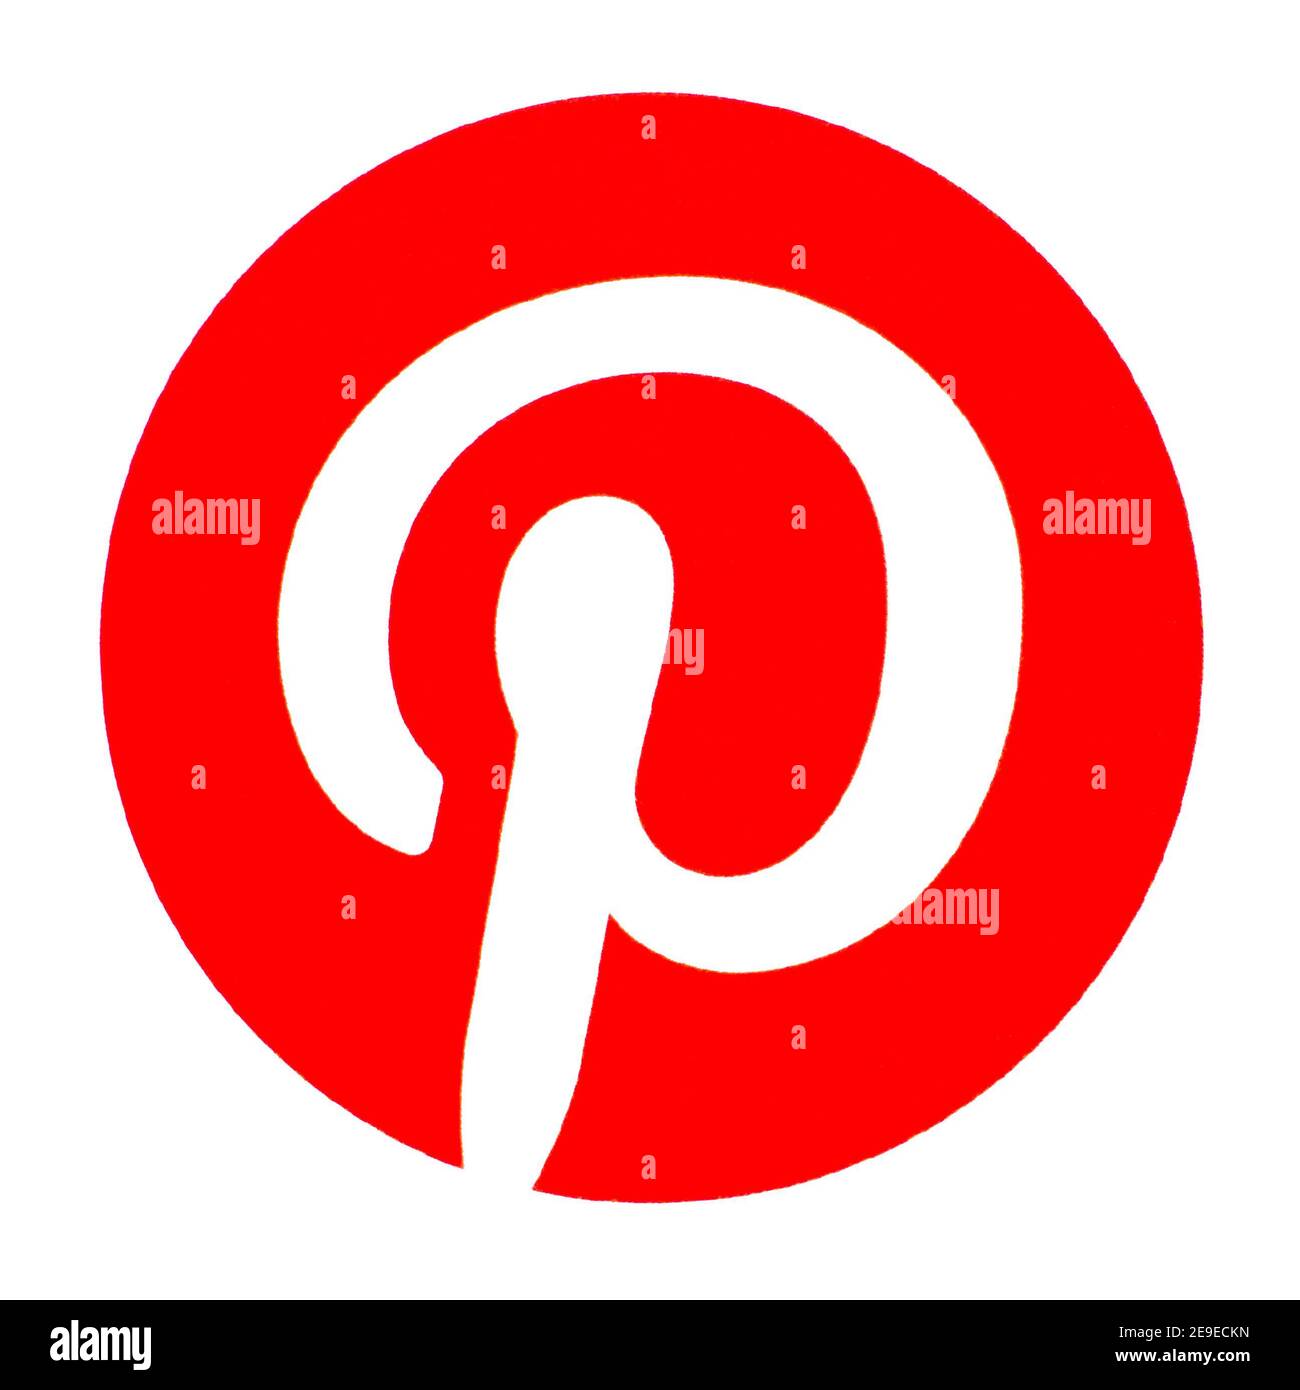 Logo Pinterest imprimé sur papier. Pinterest est une société d'applications Web et mobiles, qui exploite un site Web de partage de photos éponyme Banque D'Images